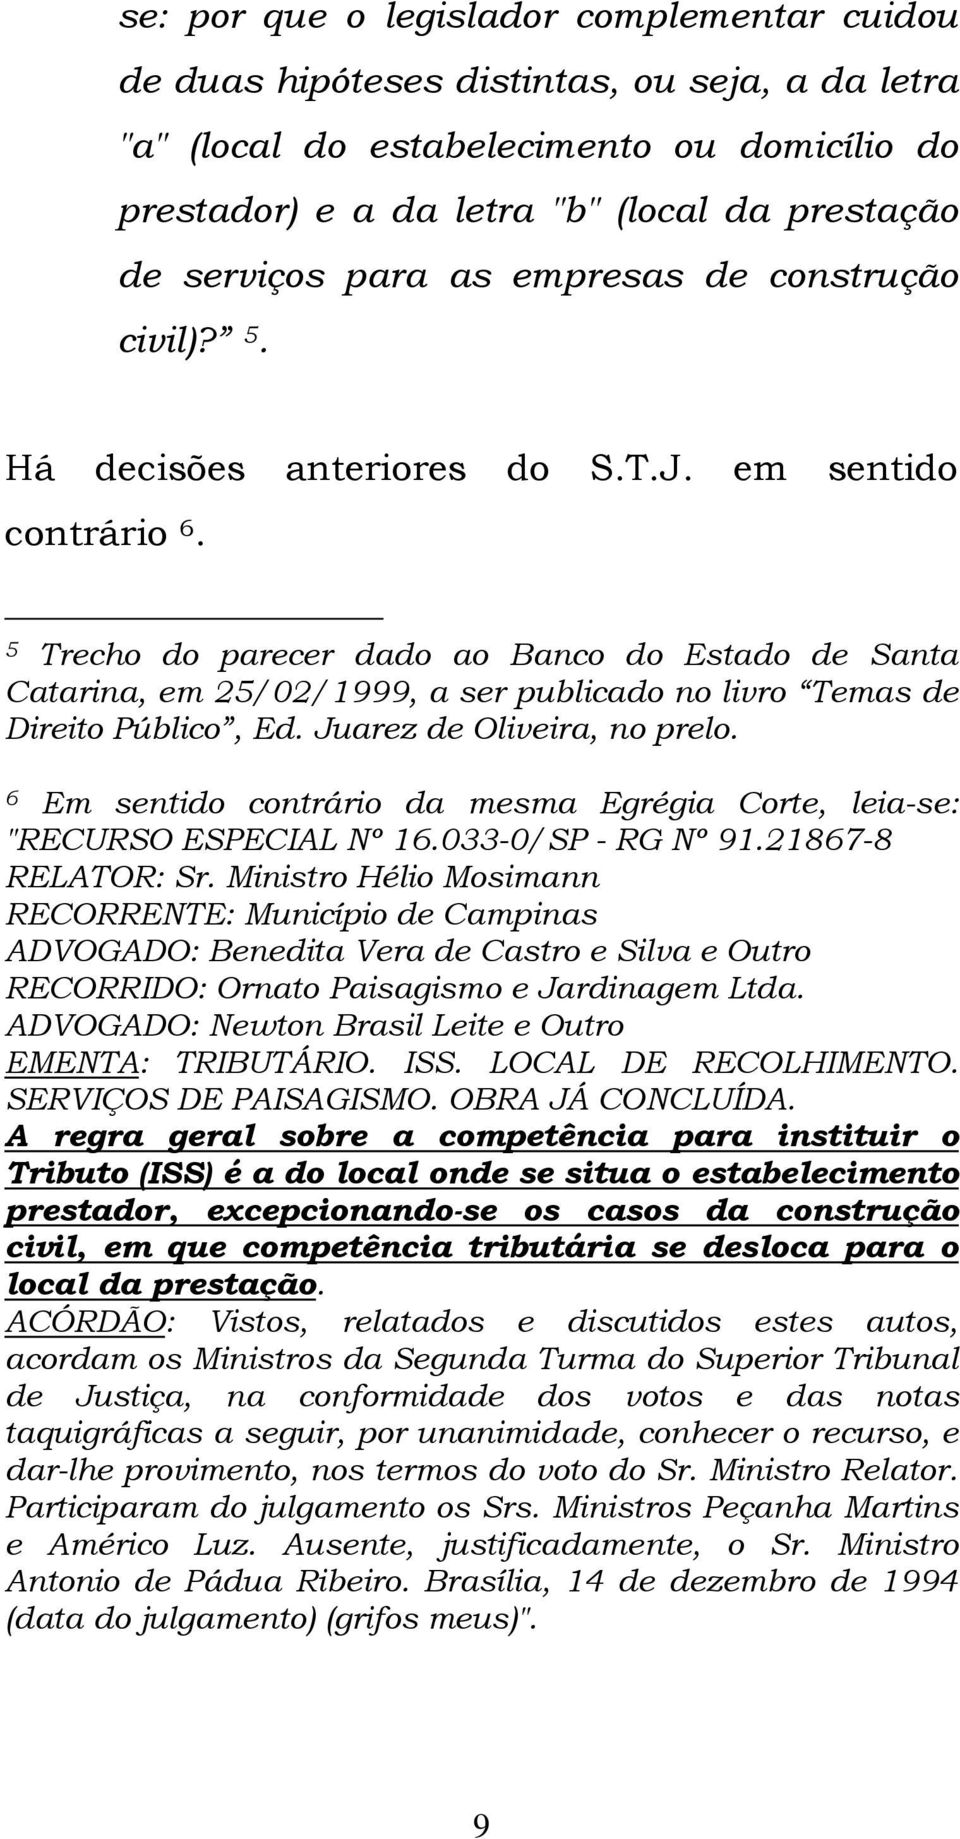 5 Trecho do parecer dado ao Banco do Estado de Santa Catarina, em 25/02/1999, a ser publicado no livro Temas de Direito Público, Ed. Juarez de Oliveira, no prelo.